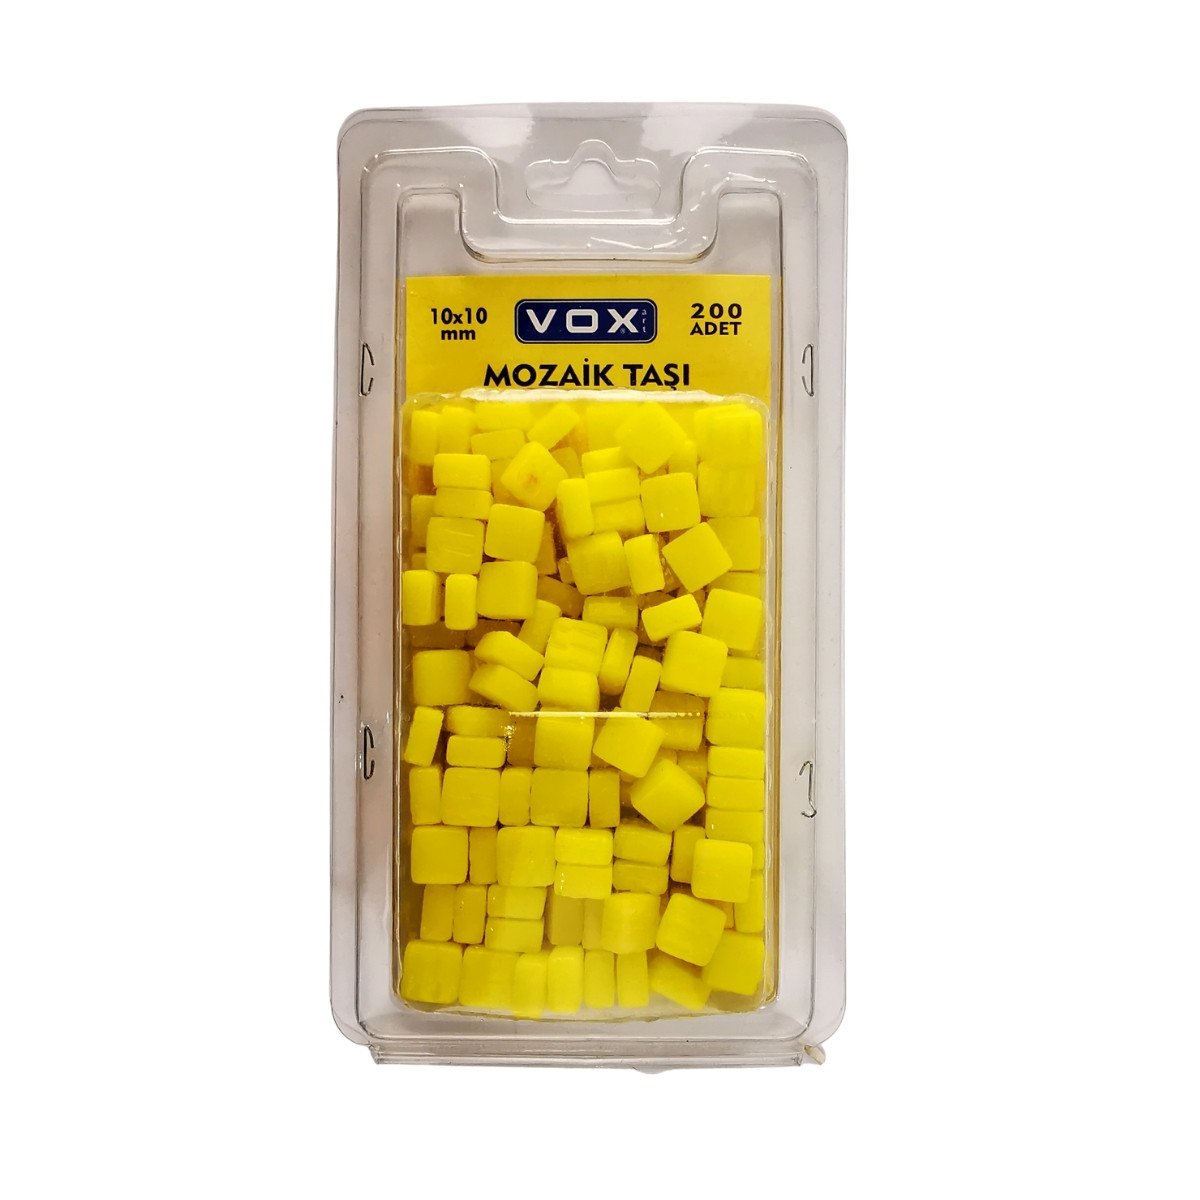 Vox Mozaik Taşı 10x10mm 11 Sarı 200lü